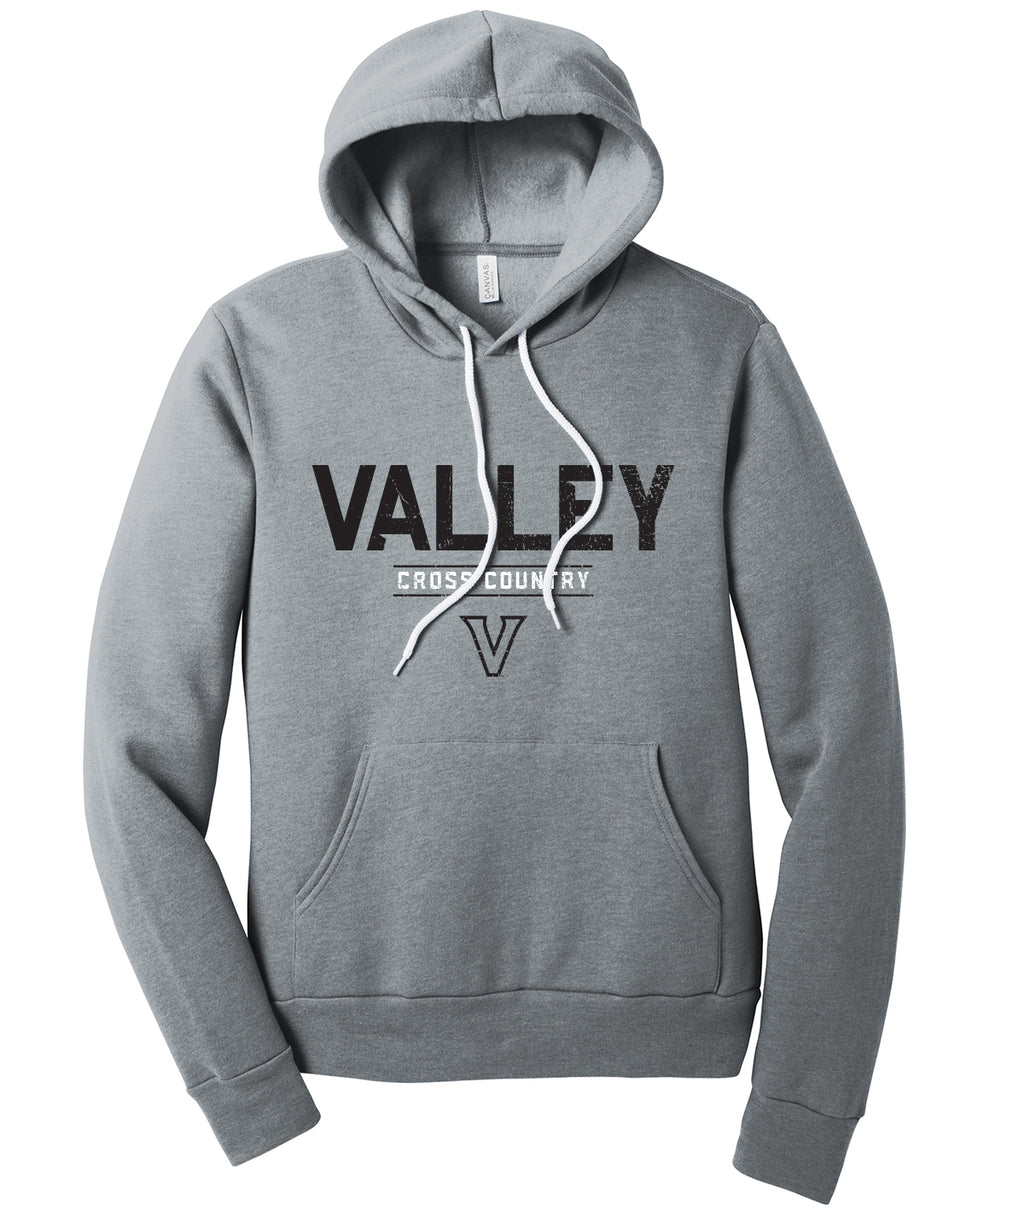 Valley Cross Country Fleece Pullover Sweatshirt